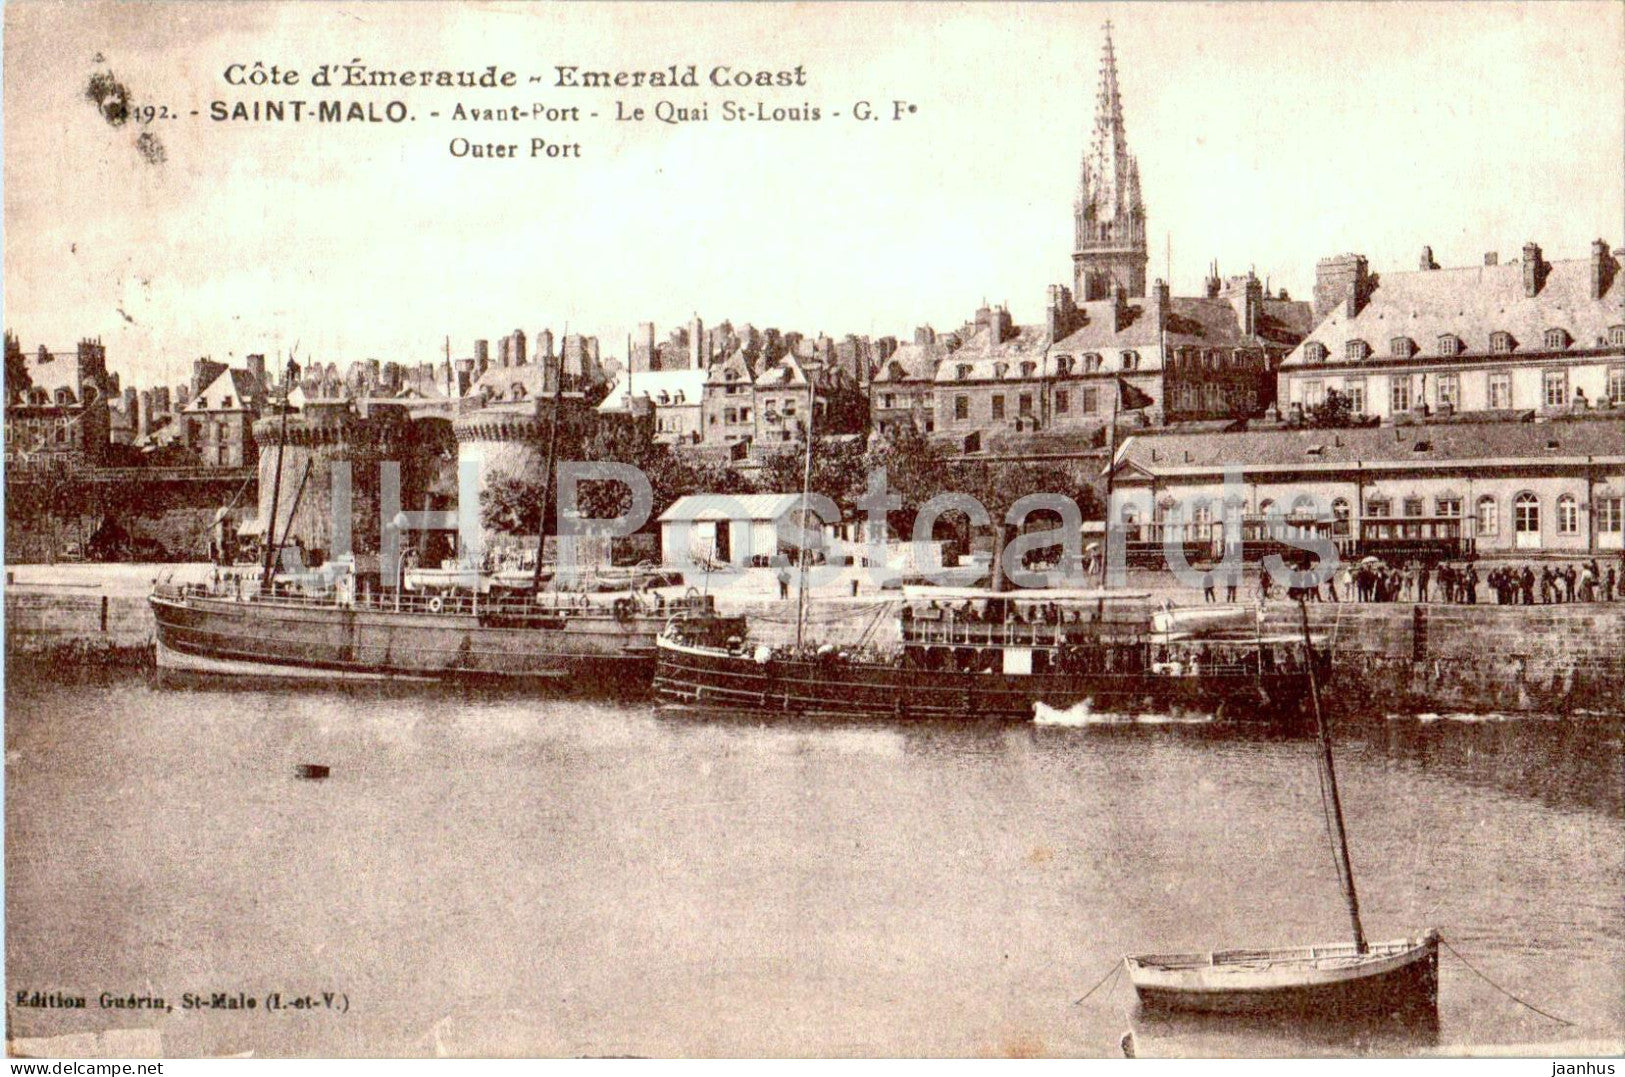 Saint Malo - Avant Port - Le Quai St Louis - Outer Port - boat - ship - 192 - old postcard - 1925 - France - used - JH Postcards